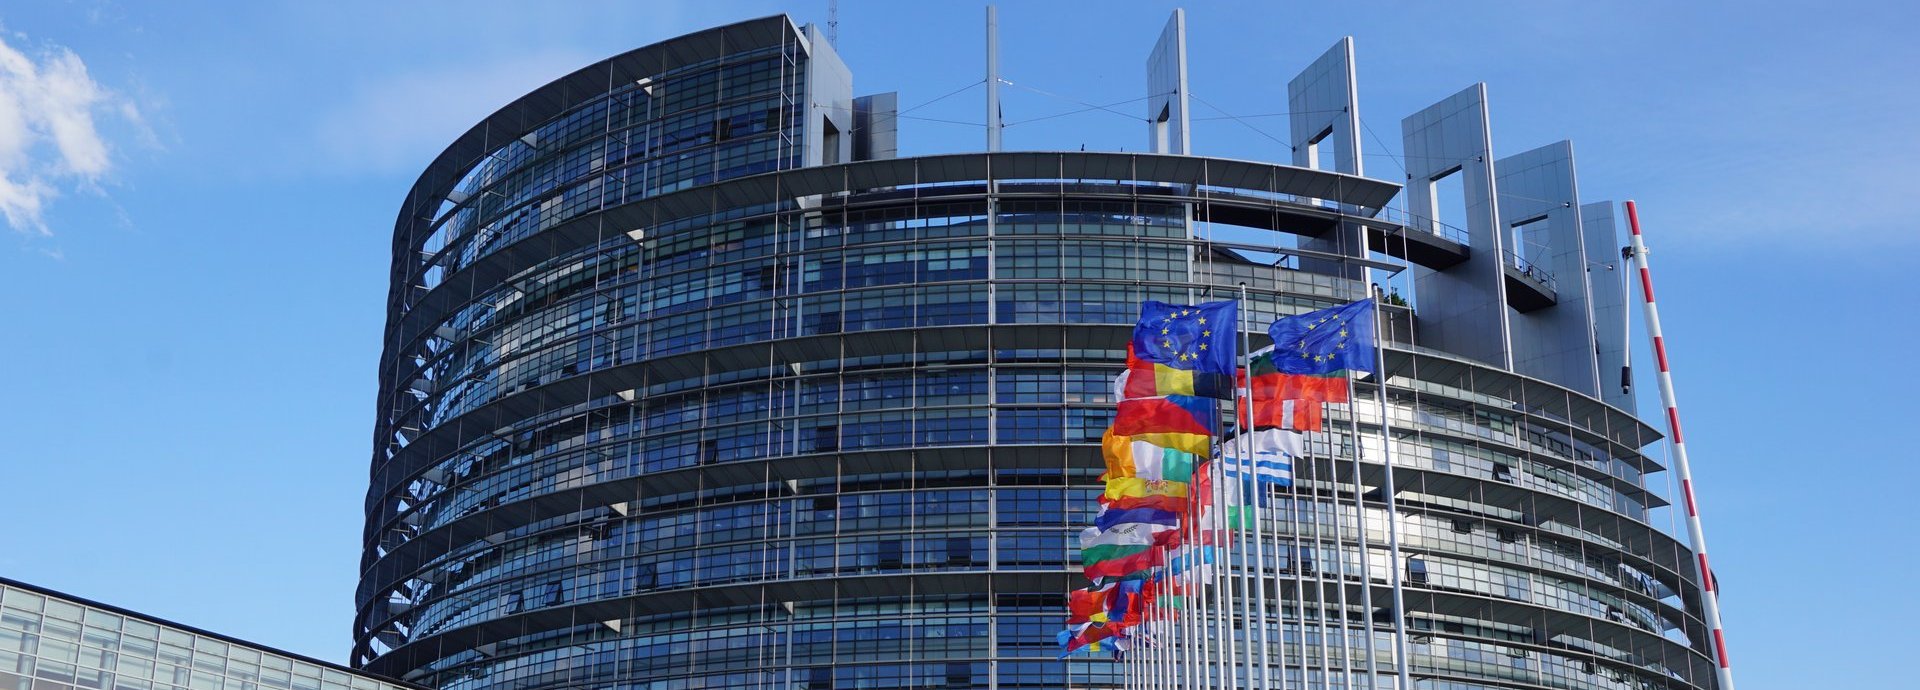 Gebäude des EU Parlements vom weiten vor blauem Himmel